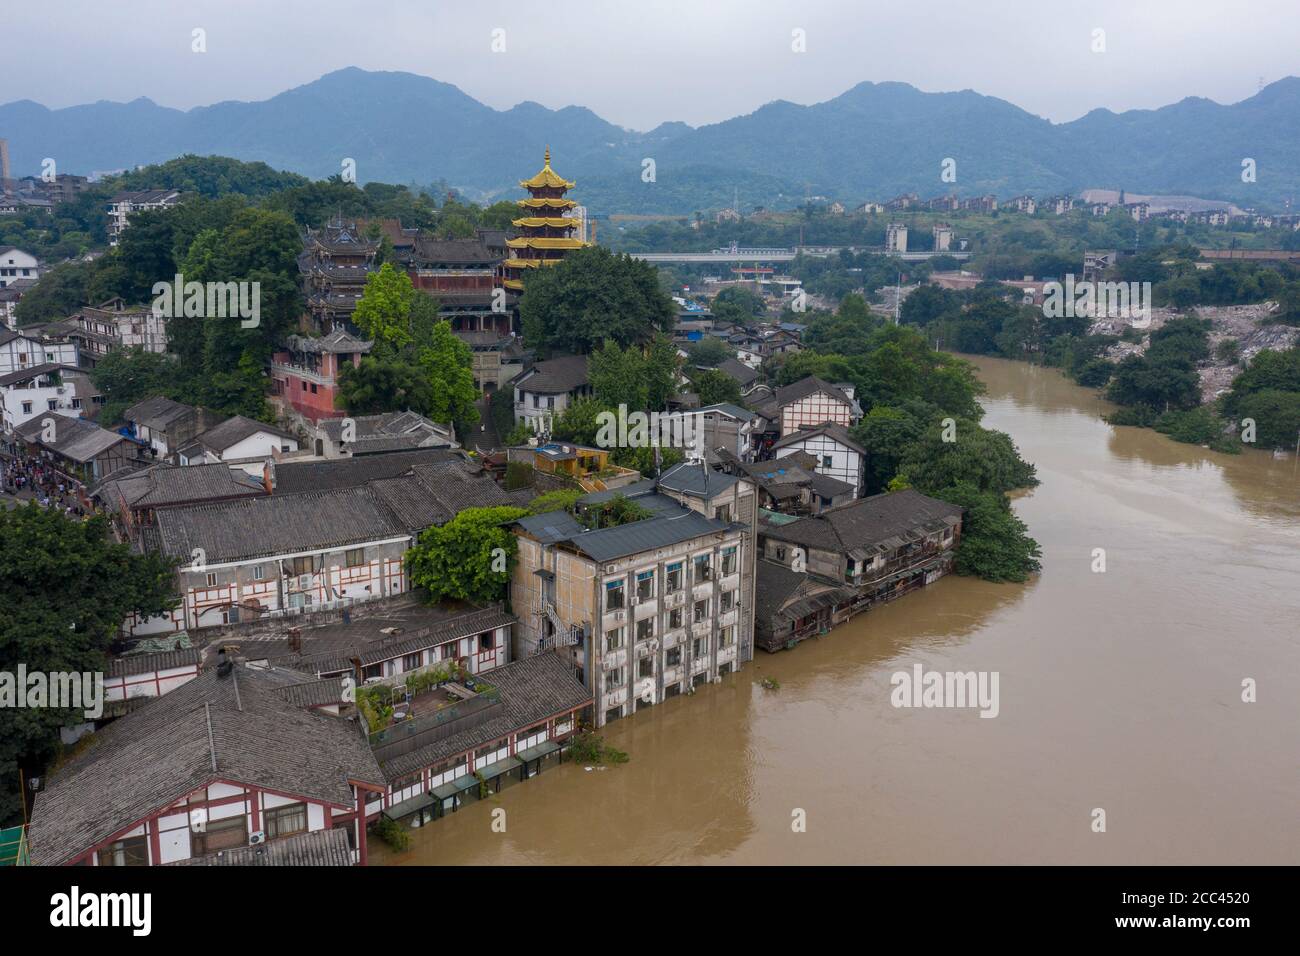 Chongqing. August 2020. Luftaufnahme vom 18. August 2020 zeigt das überflutete Gebiet in der antiken Stadt Ciqikou im Bezirk Shapingba, südwestlich der chinesischen Gemeinde Chongqing. Die Gemeinde Chongqing, die sich am oberen Ufer des Jangtse-Flusses befindet, wurde am Dienstag von schweren Überschwemmungen heimgesucht. Daher wurde ein Level-I-Notfallplan zur Hochwasserkontrolle erlassen. Quelle: Liu Chan/Xinhua/Alamy Live News Stockfoto